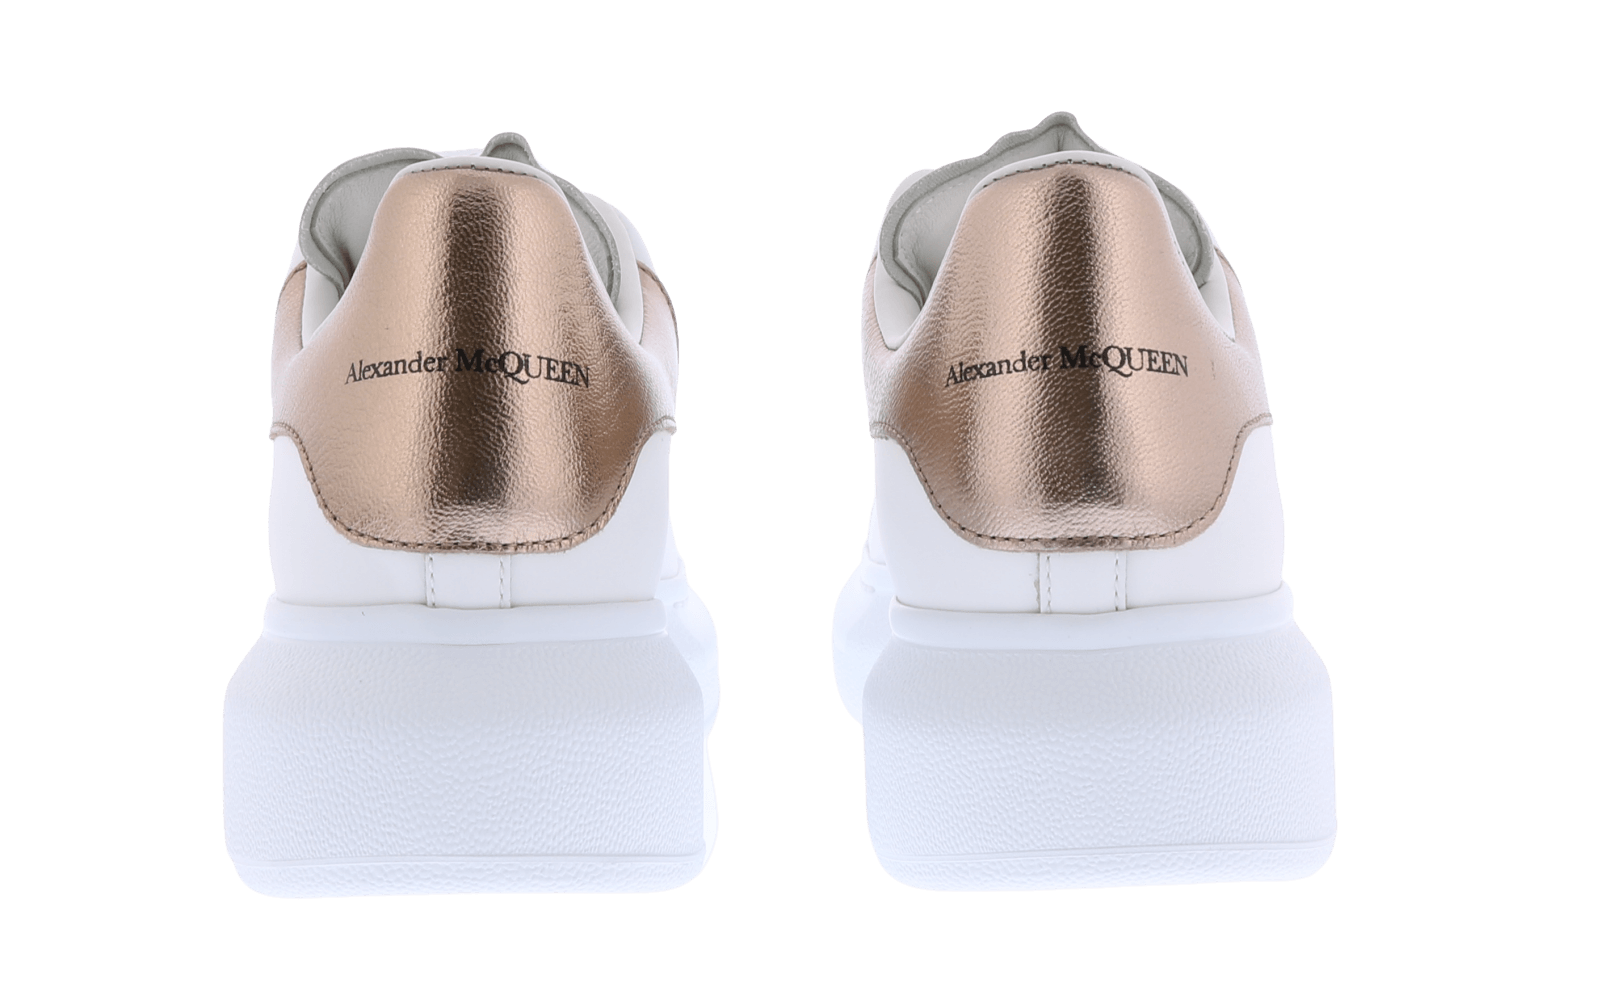 Dames Oversized Sneaker wit/goud